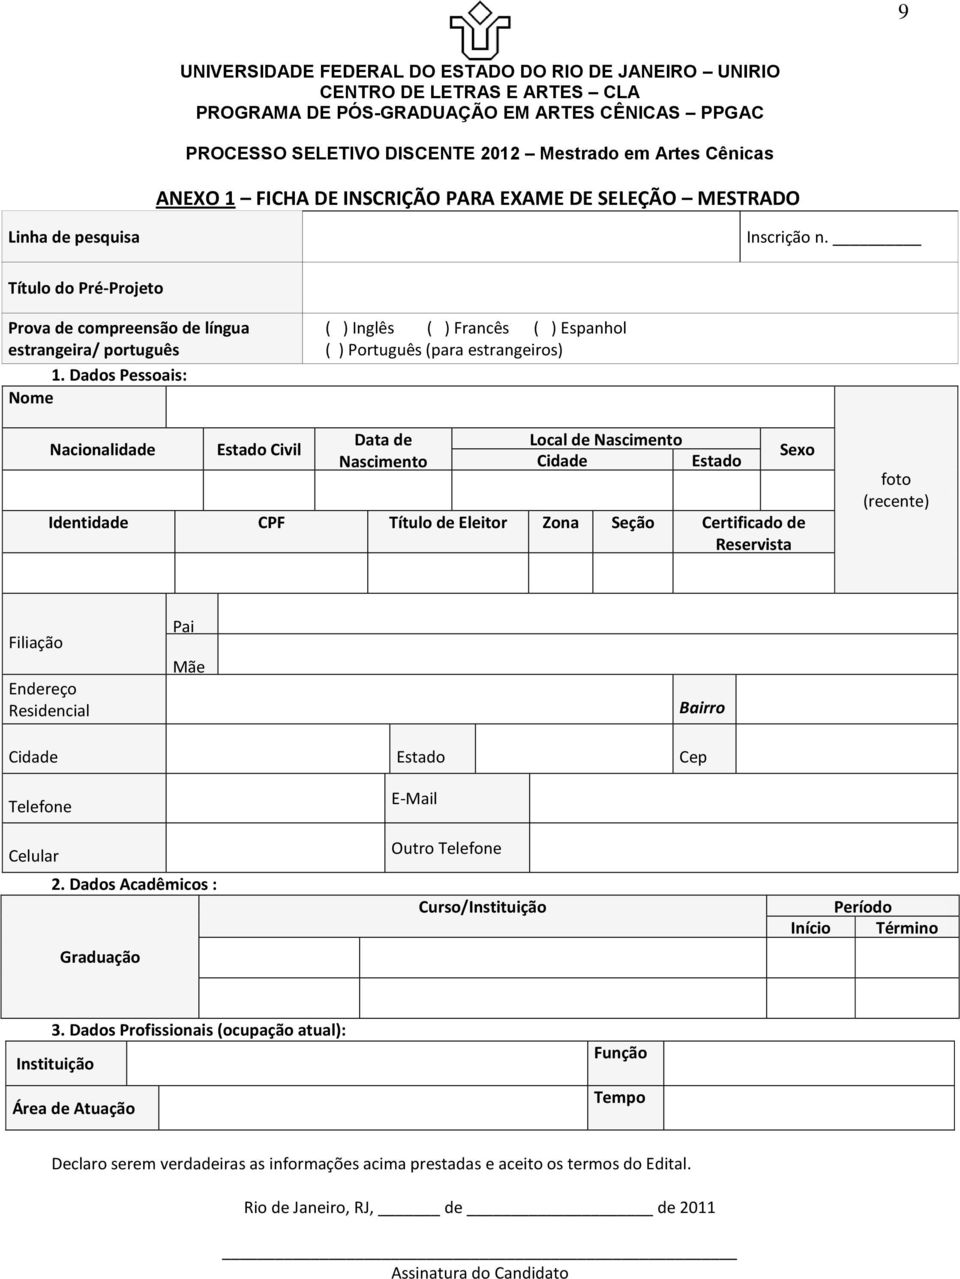 Eleitor Zona Seção Certificado de Reservista Sexo foto (recente) Filiação Endereço Residencial Pai Mãe Bairro Cidade Estado Cep Telefone Celular 2.